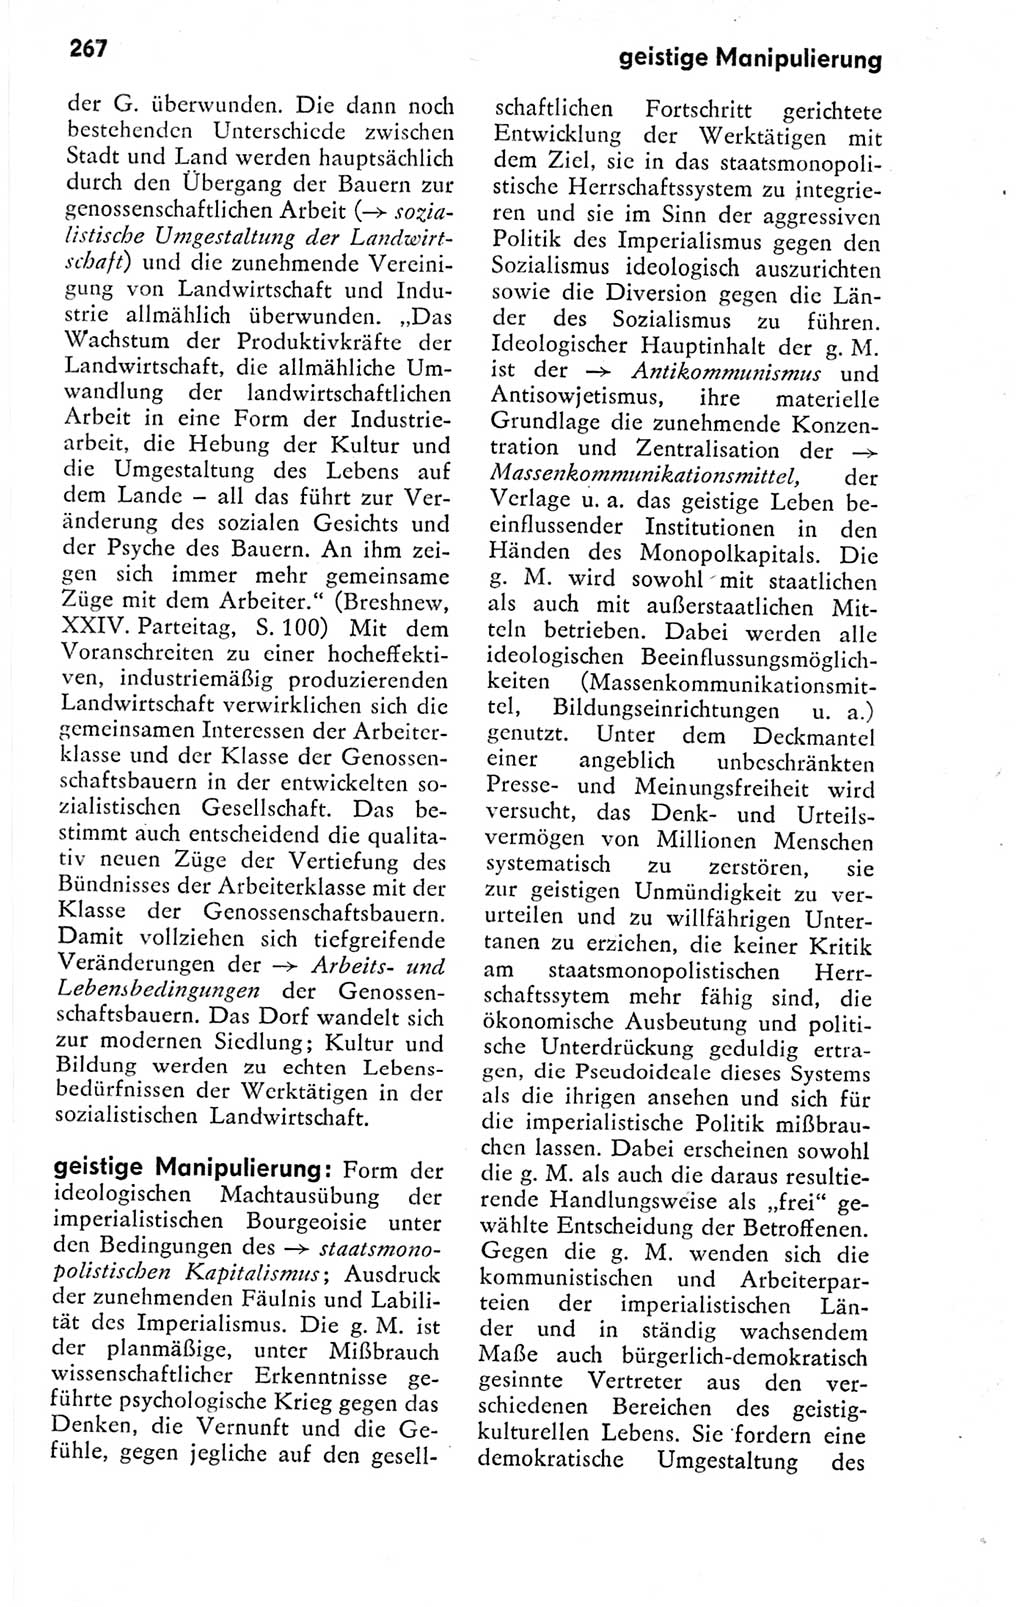 Kleines politisches Wörterbuch [Deutsche Demokratische Republik (DDR)] 1978, Seite 267 (Kl. pol. Wb. DDR 1978, S. 267)